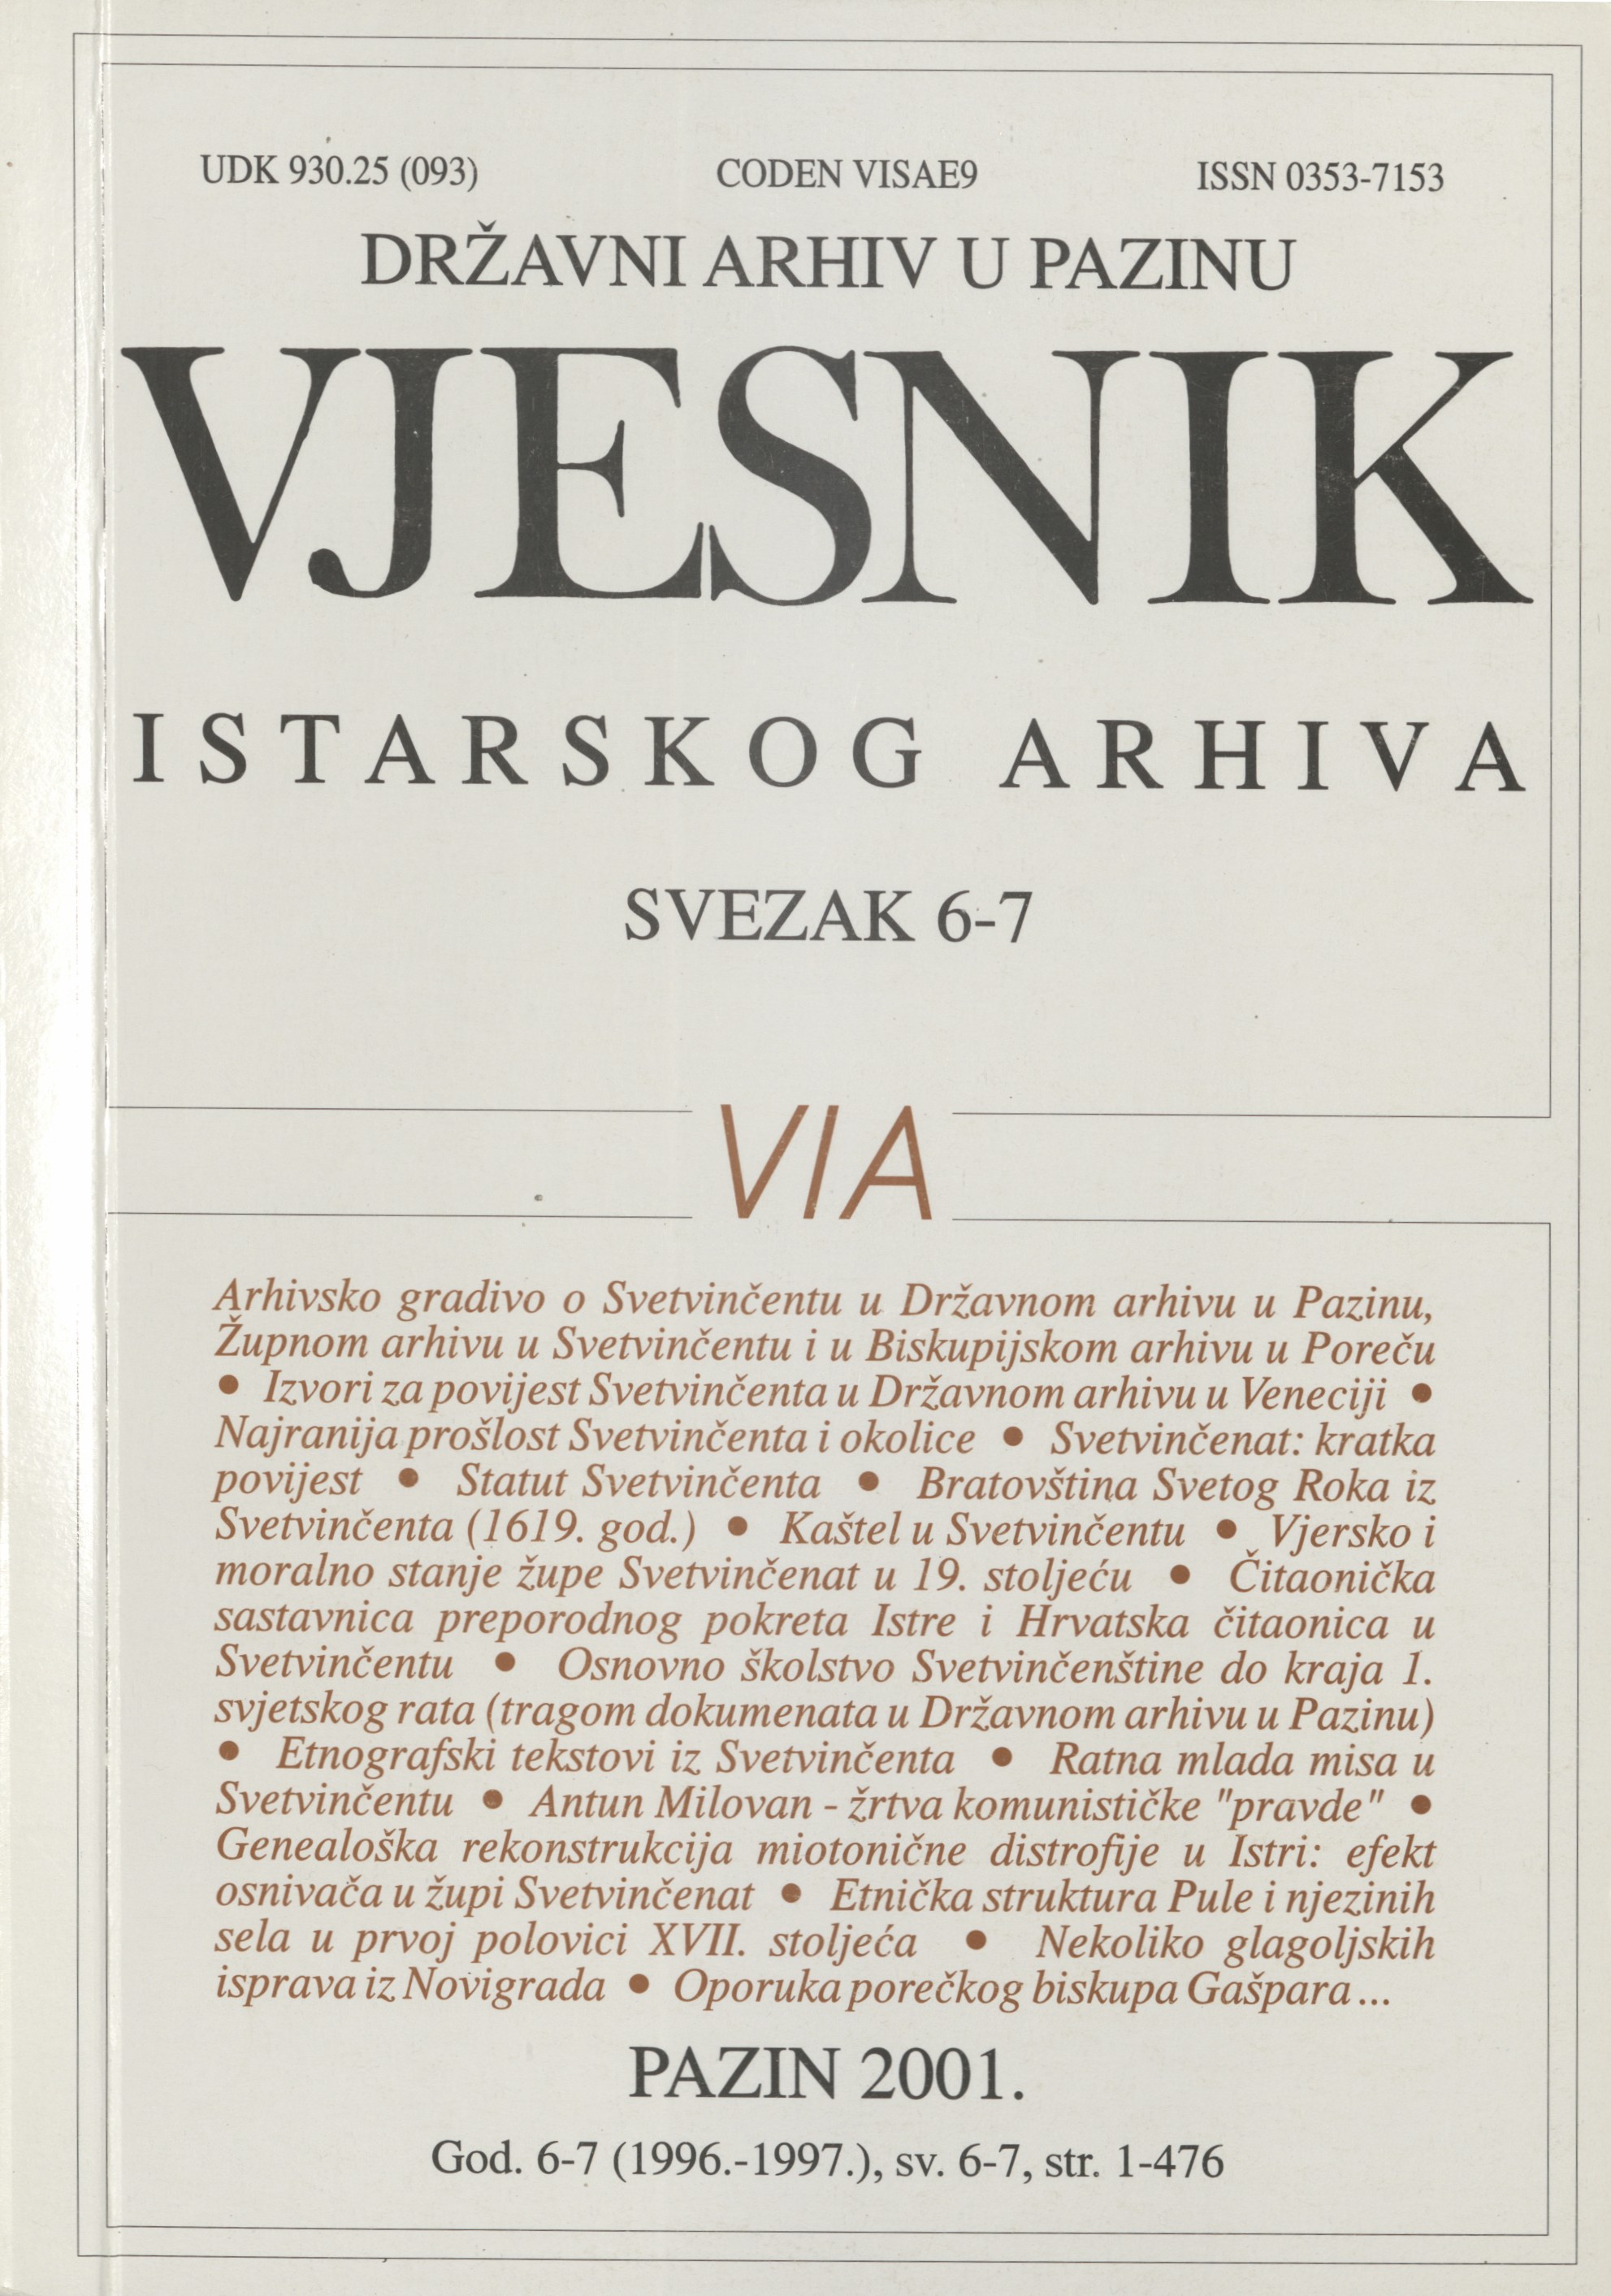 					Visualizza Vjesnik istarskog arhiva sv. 6-7 (1996.-1997.)
				